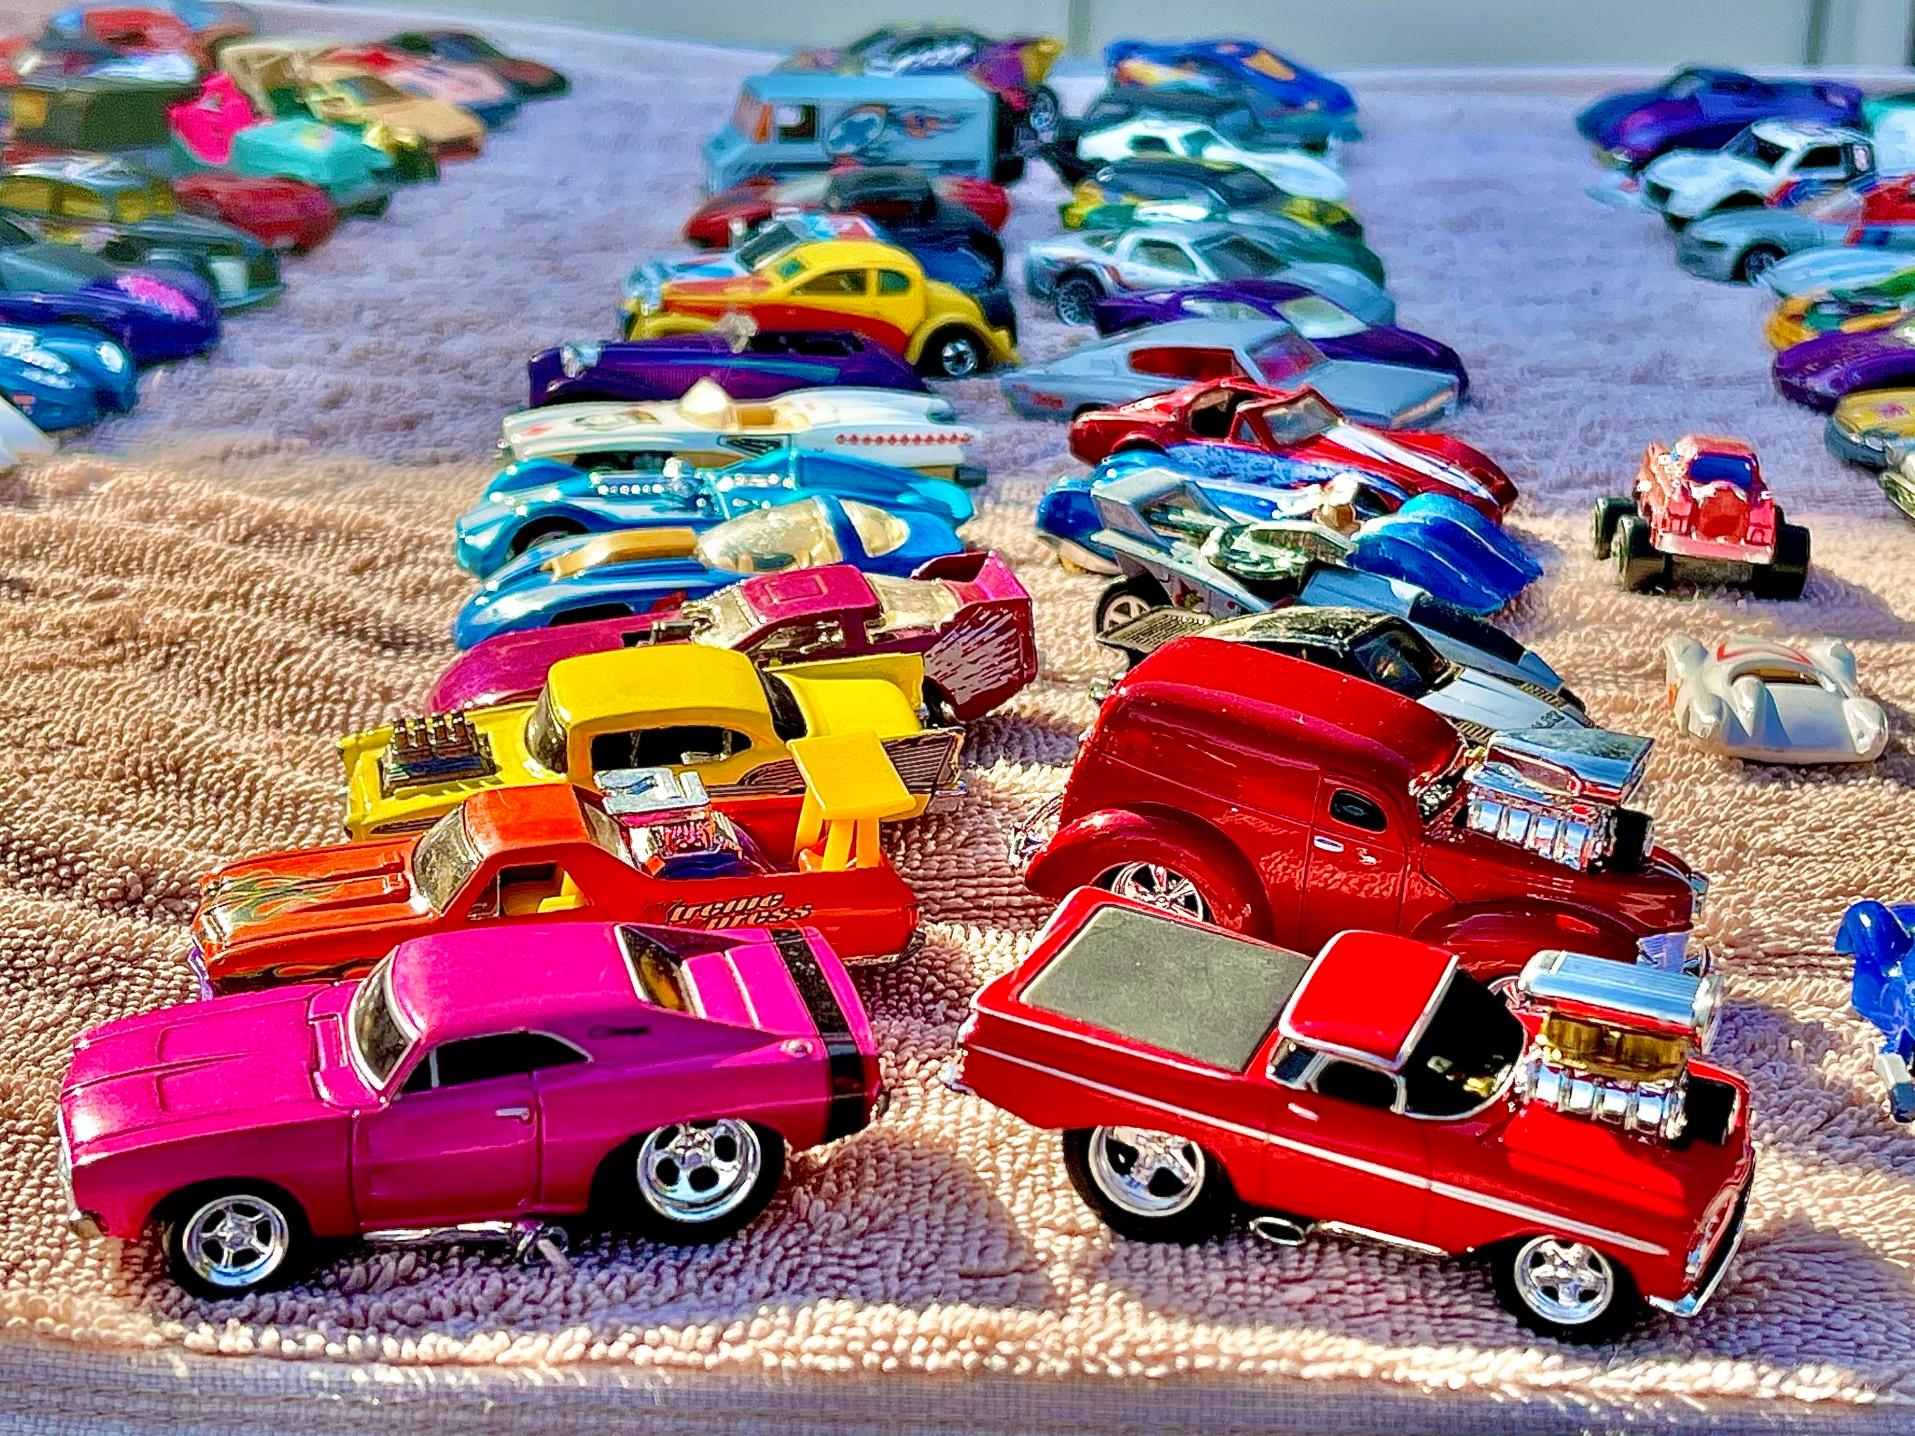 可以热车轮粉红色沙滩炸弹是一个超级罕见的玩具车。